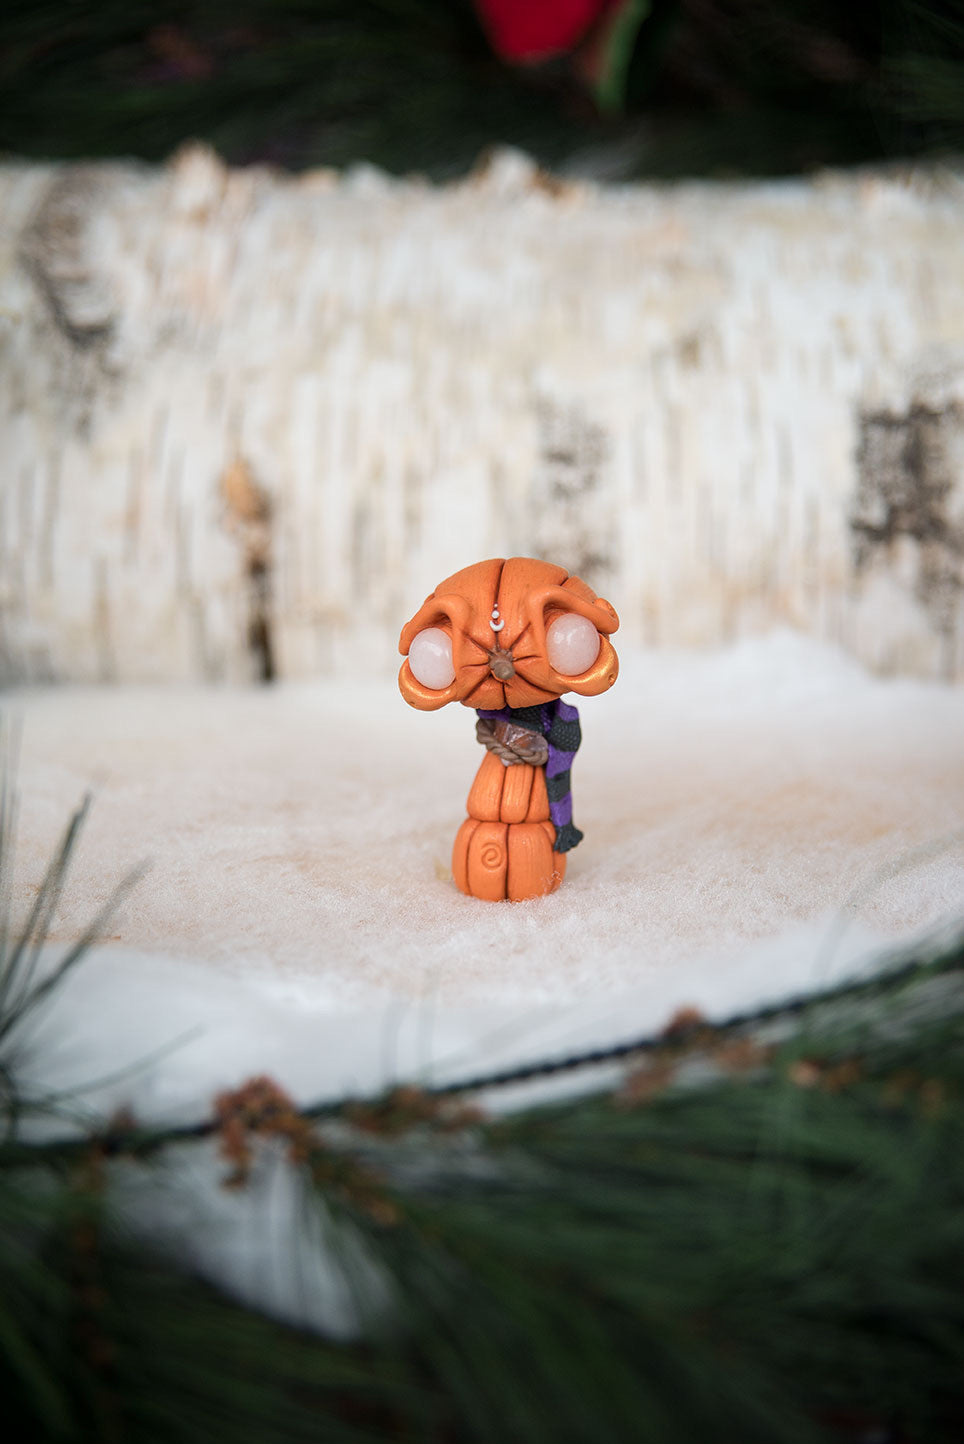 Pumpkin “Snowman” Mish #169